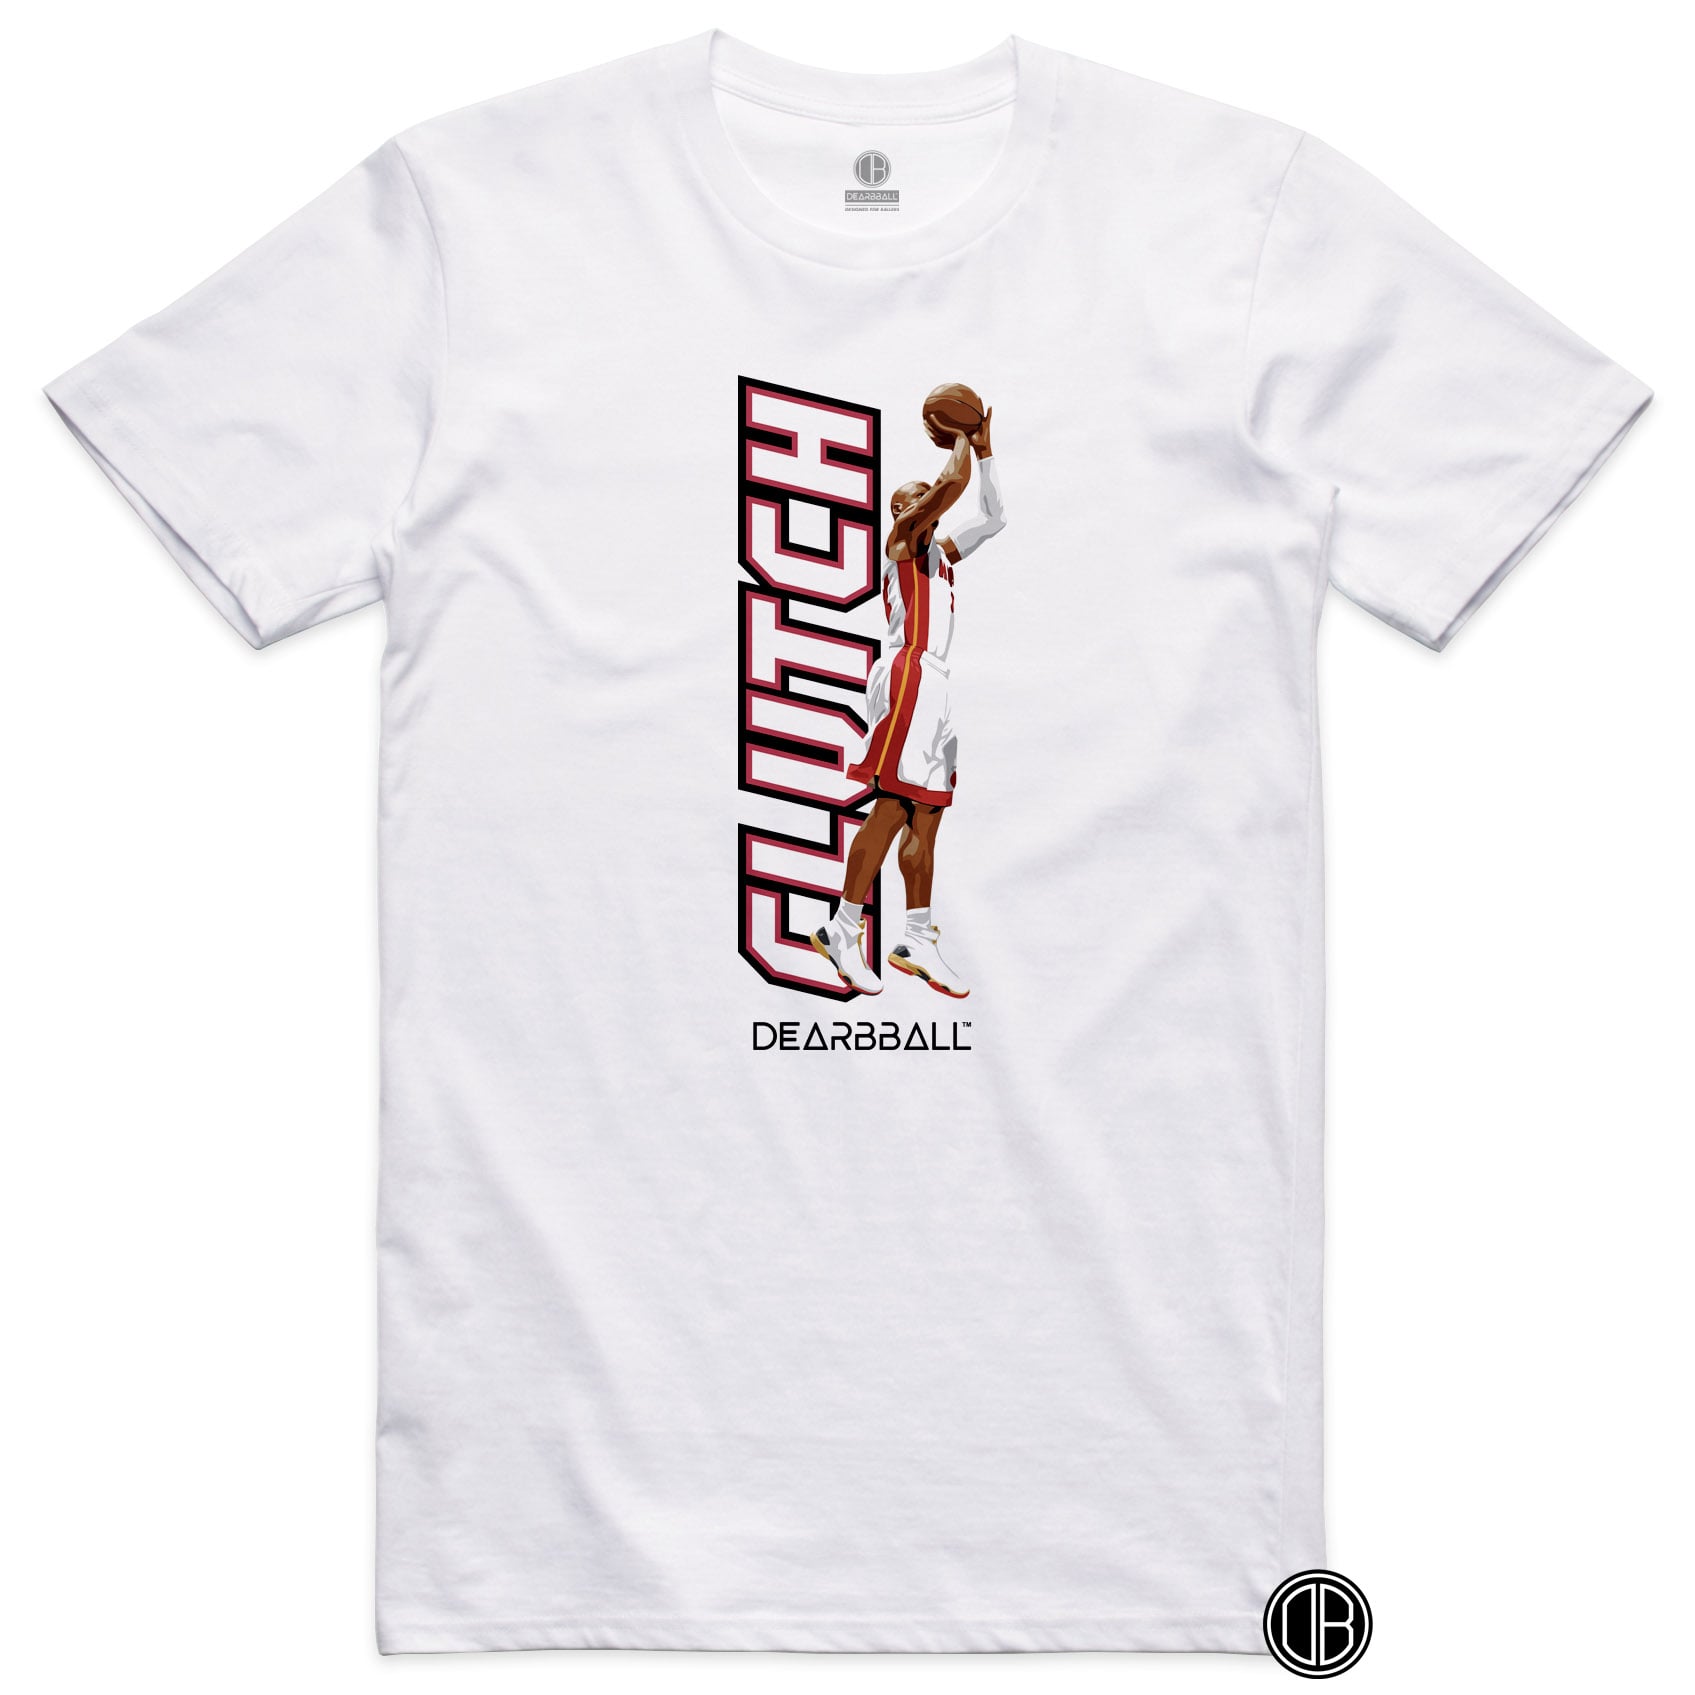 DearBBall T-Shirt - CLUTCH Legendary Shoot Edition